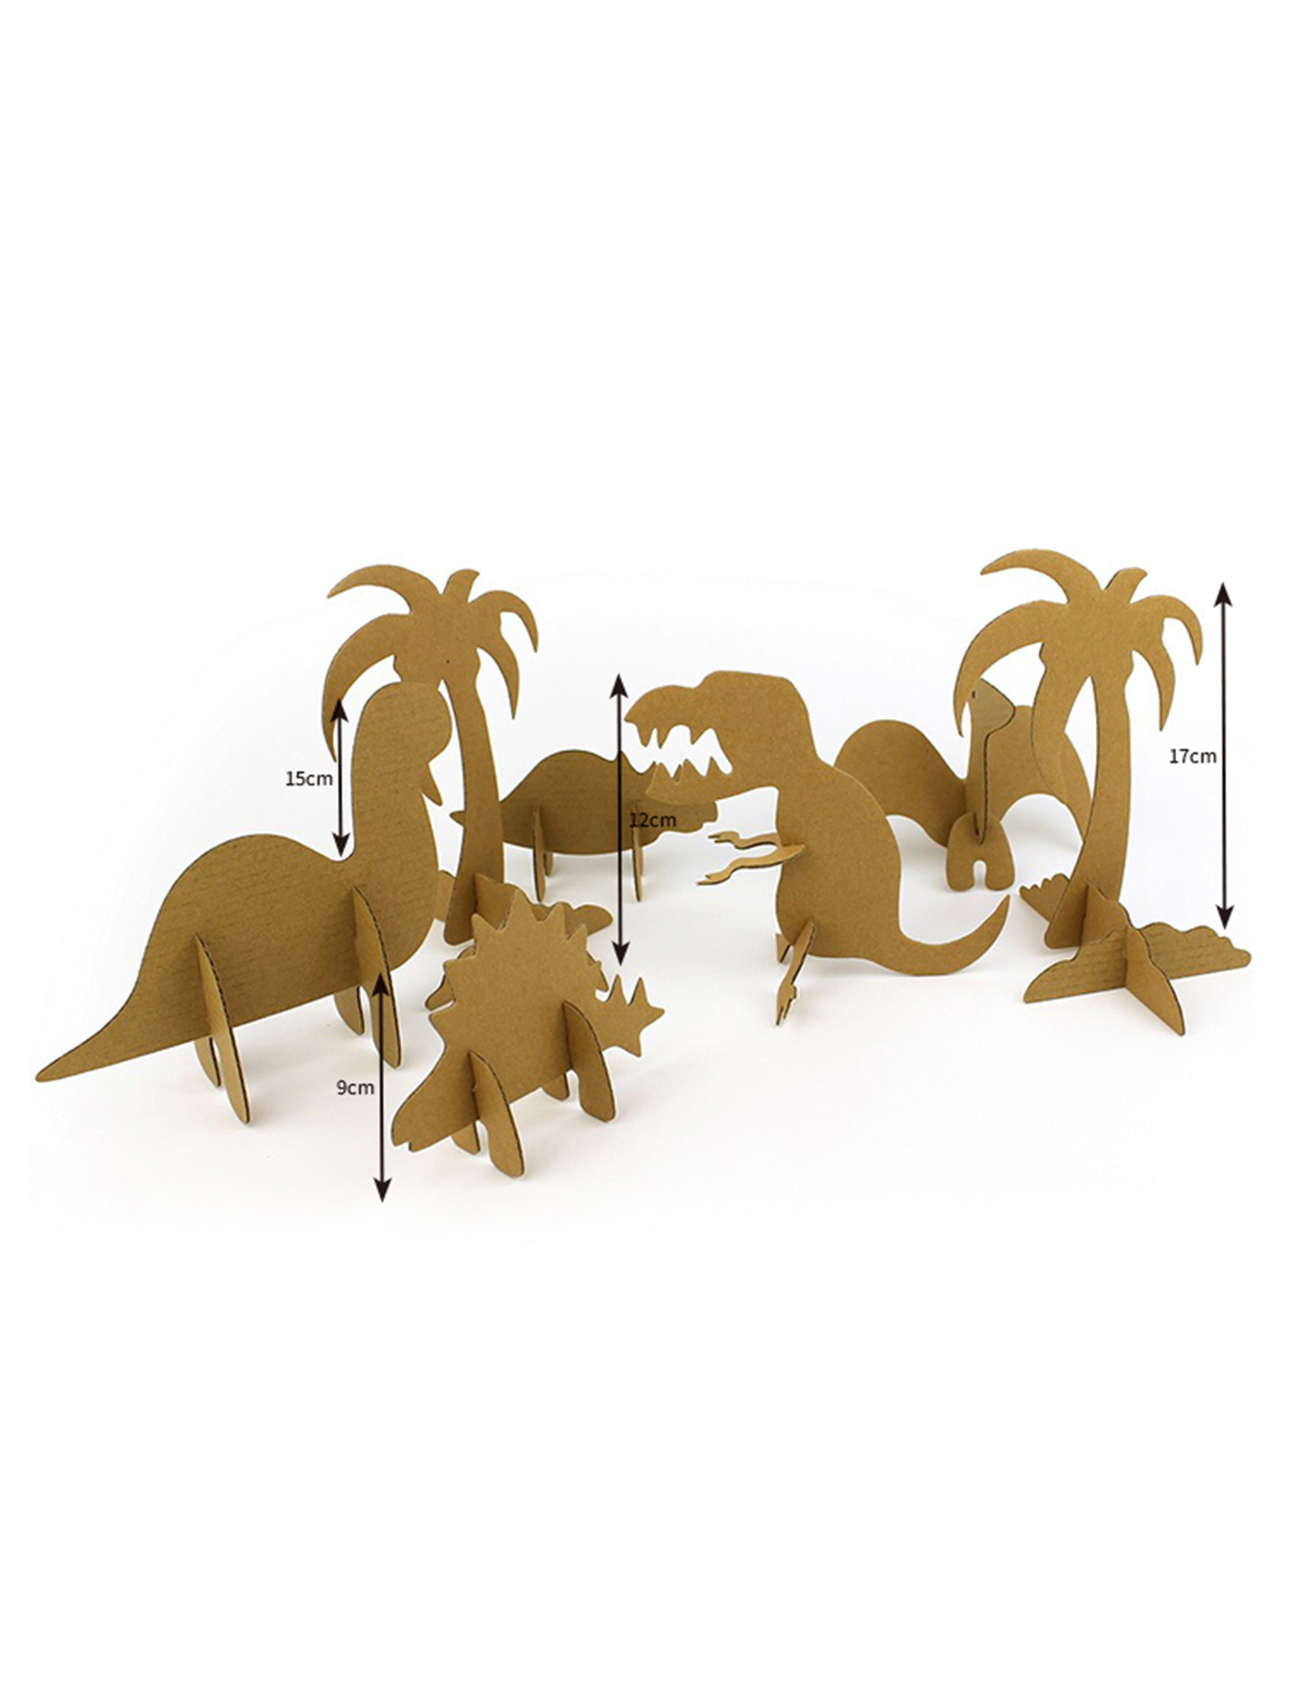 Mndandanda wa Dinosaur 3D Puzzle Paper Model Kwa ana kusonkhanitsa ndikujambula CG131 (3)